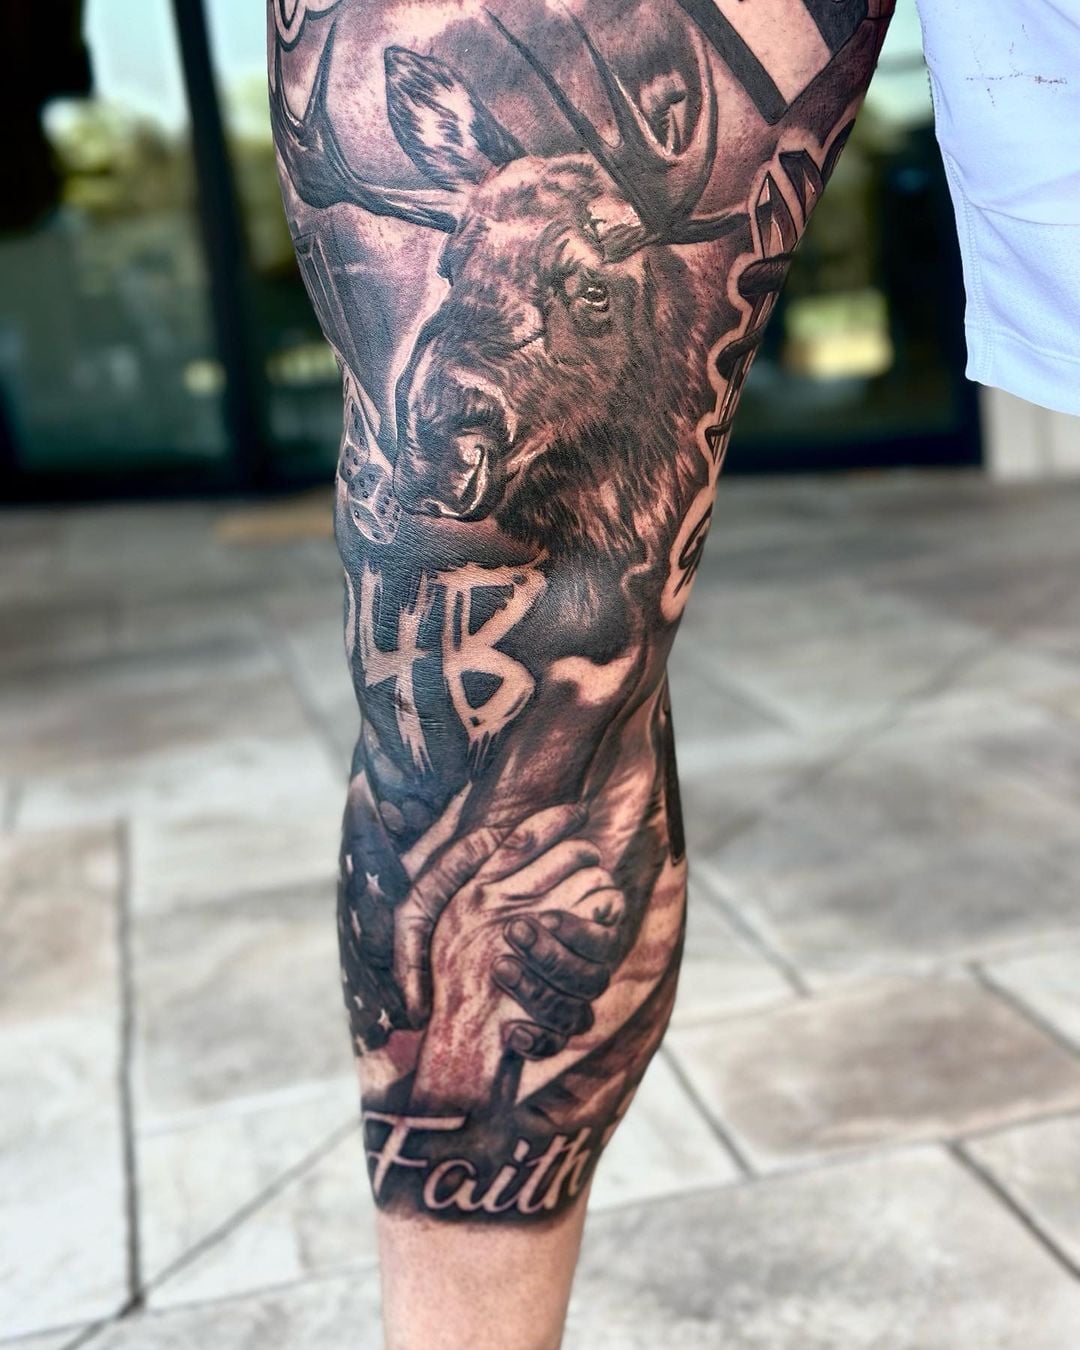 Dak Prescott's Man of God Tattoos